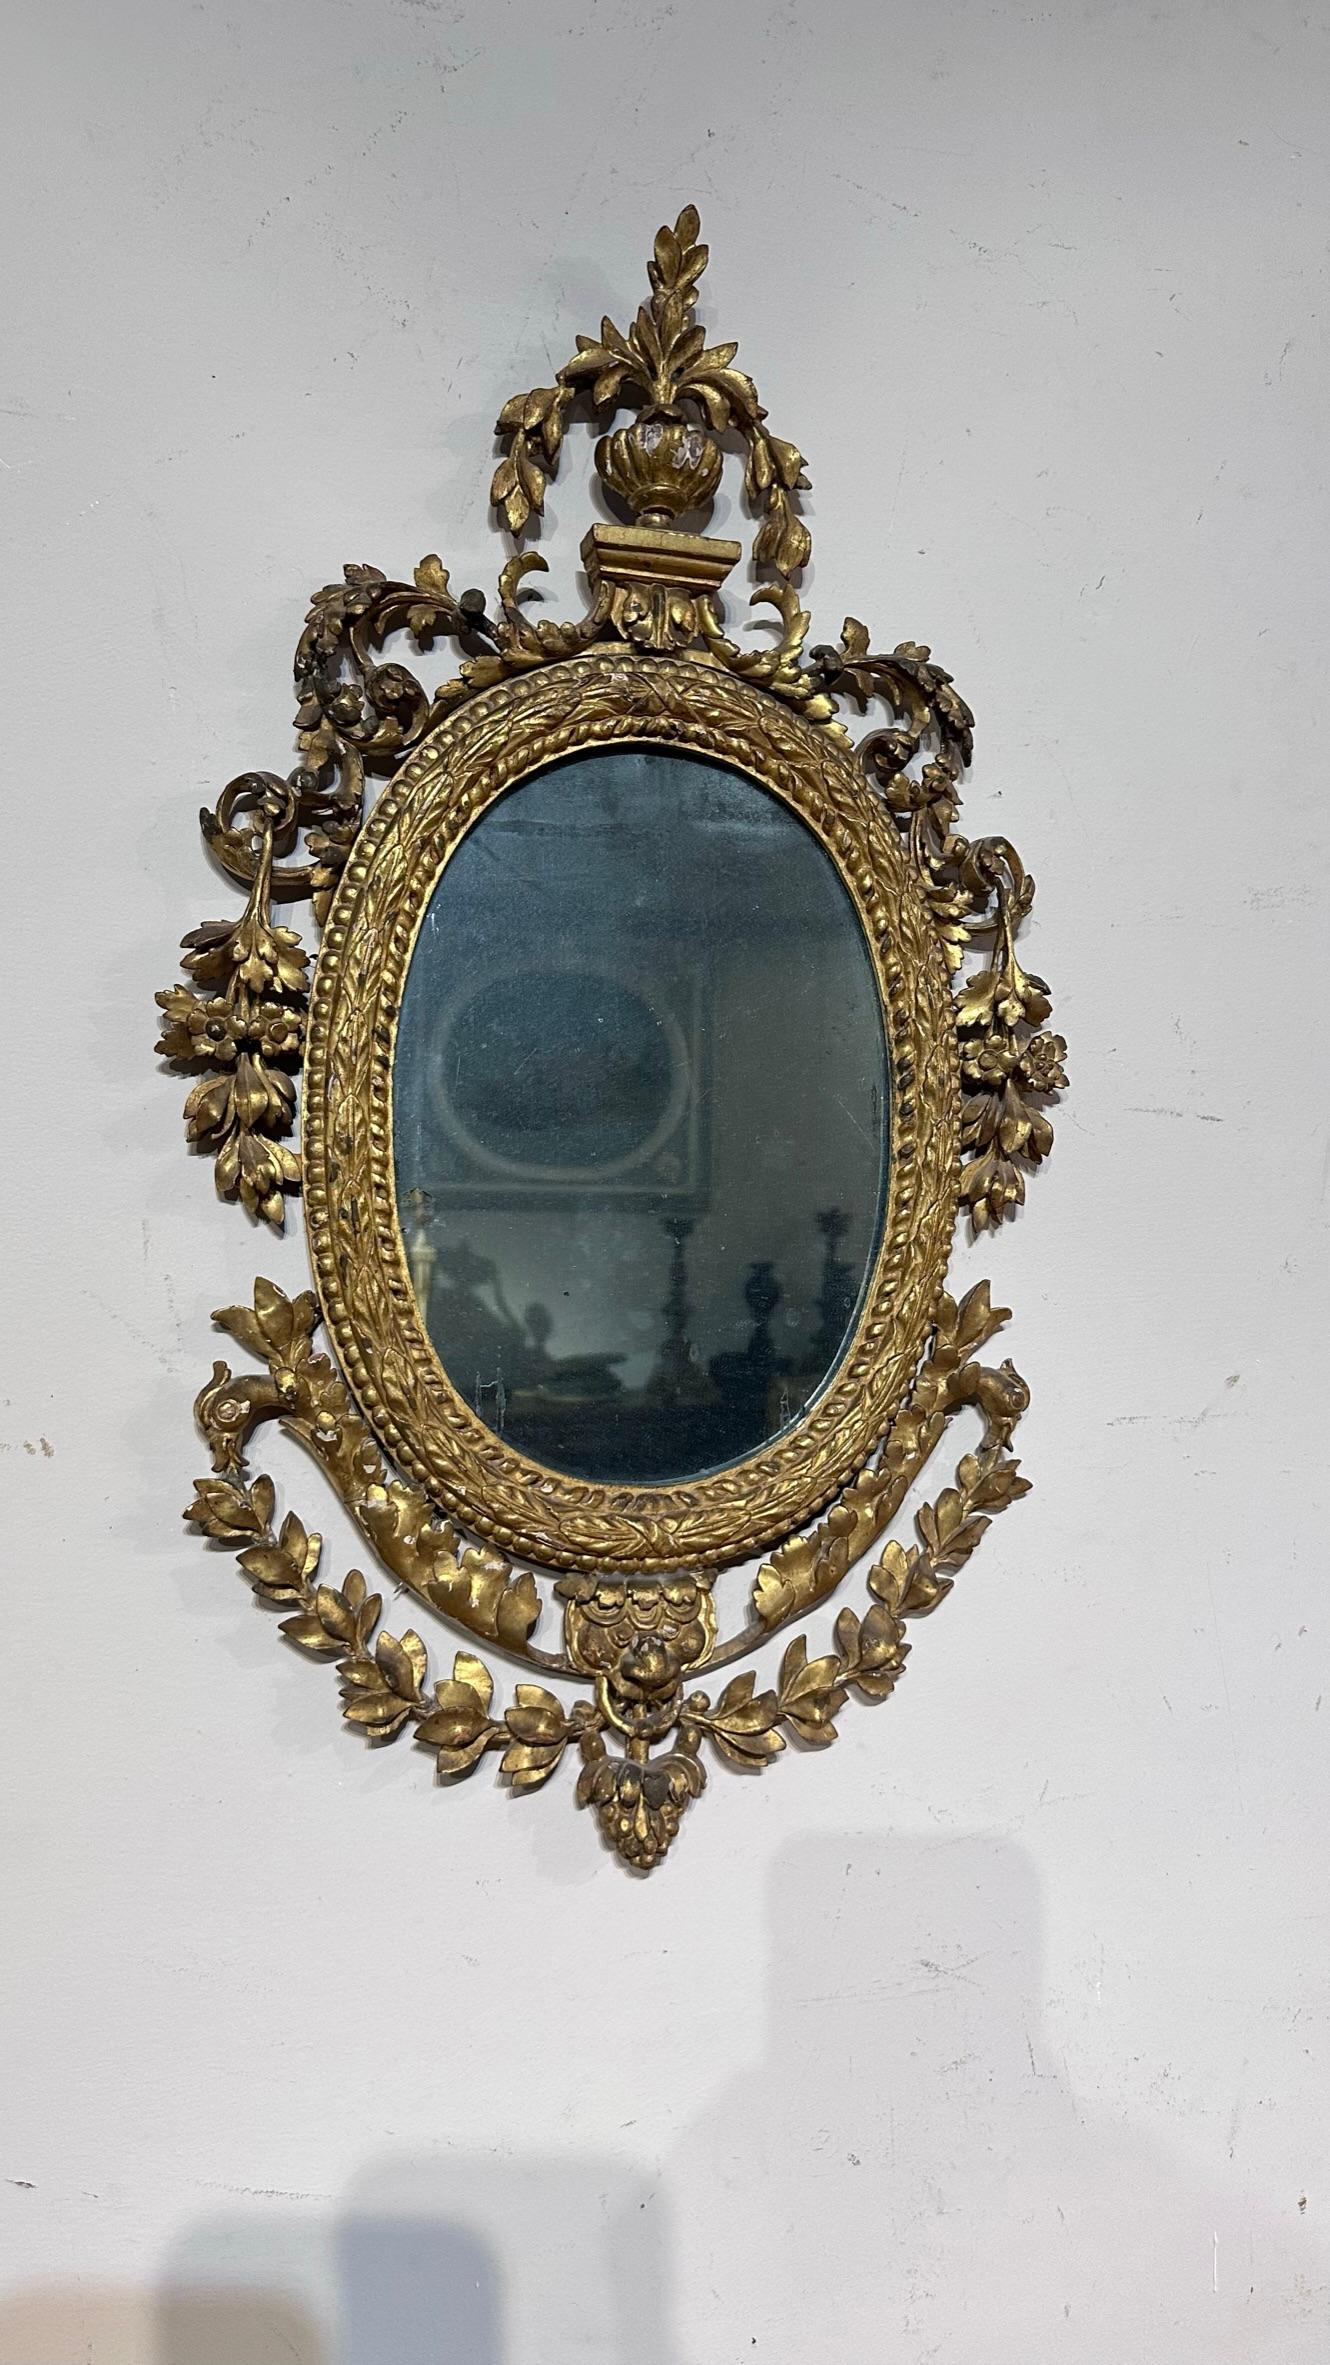 Ovaler Spiegel aus fein geschnitztem Kiefernholz und vergoldet mit Blattgold und originalem Quecksilberlicht. Typische italienische Manufaktur im Louis-XVI-Stil der späten 1700er Jahre.

Maße HxBxT 64 x 35 x 3,5cm